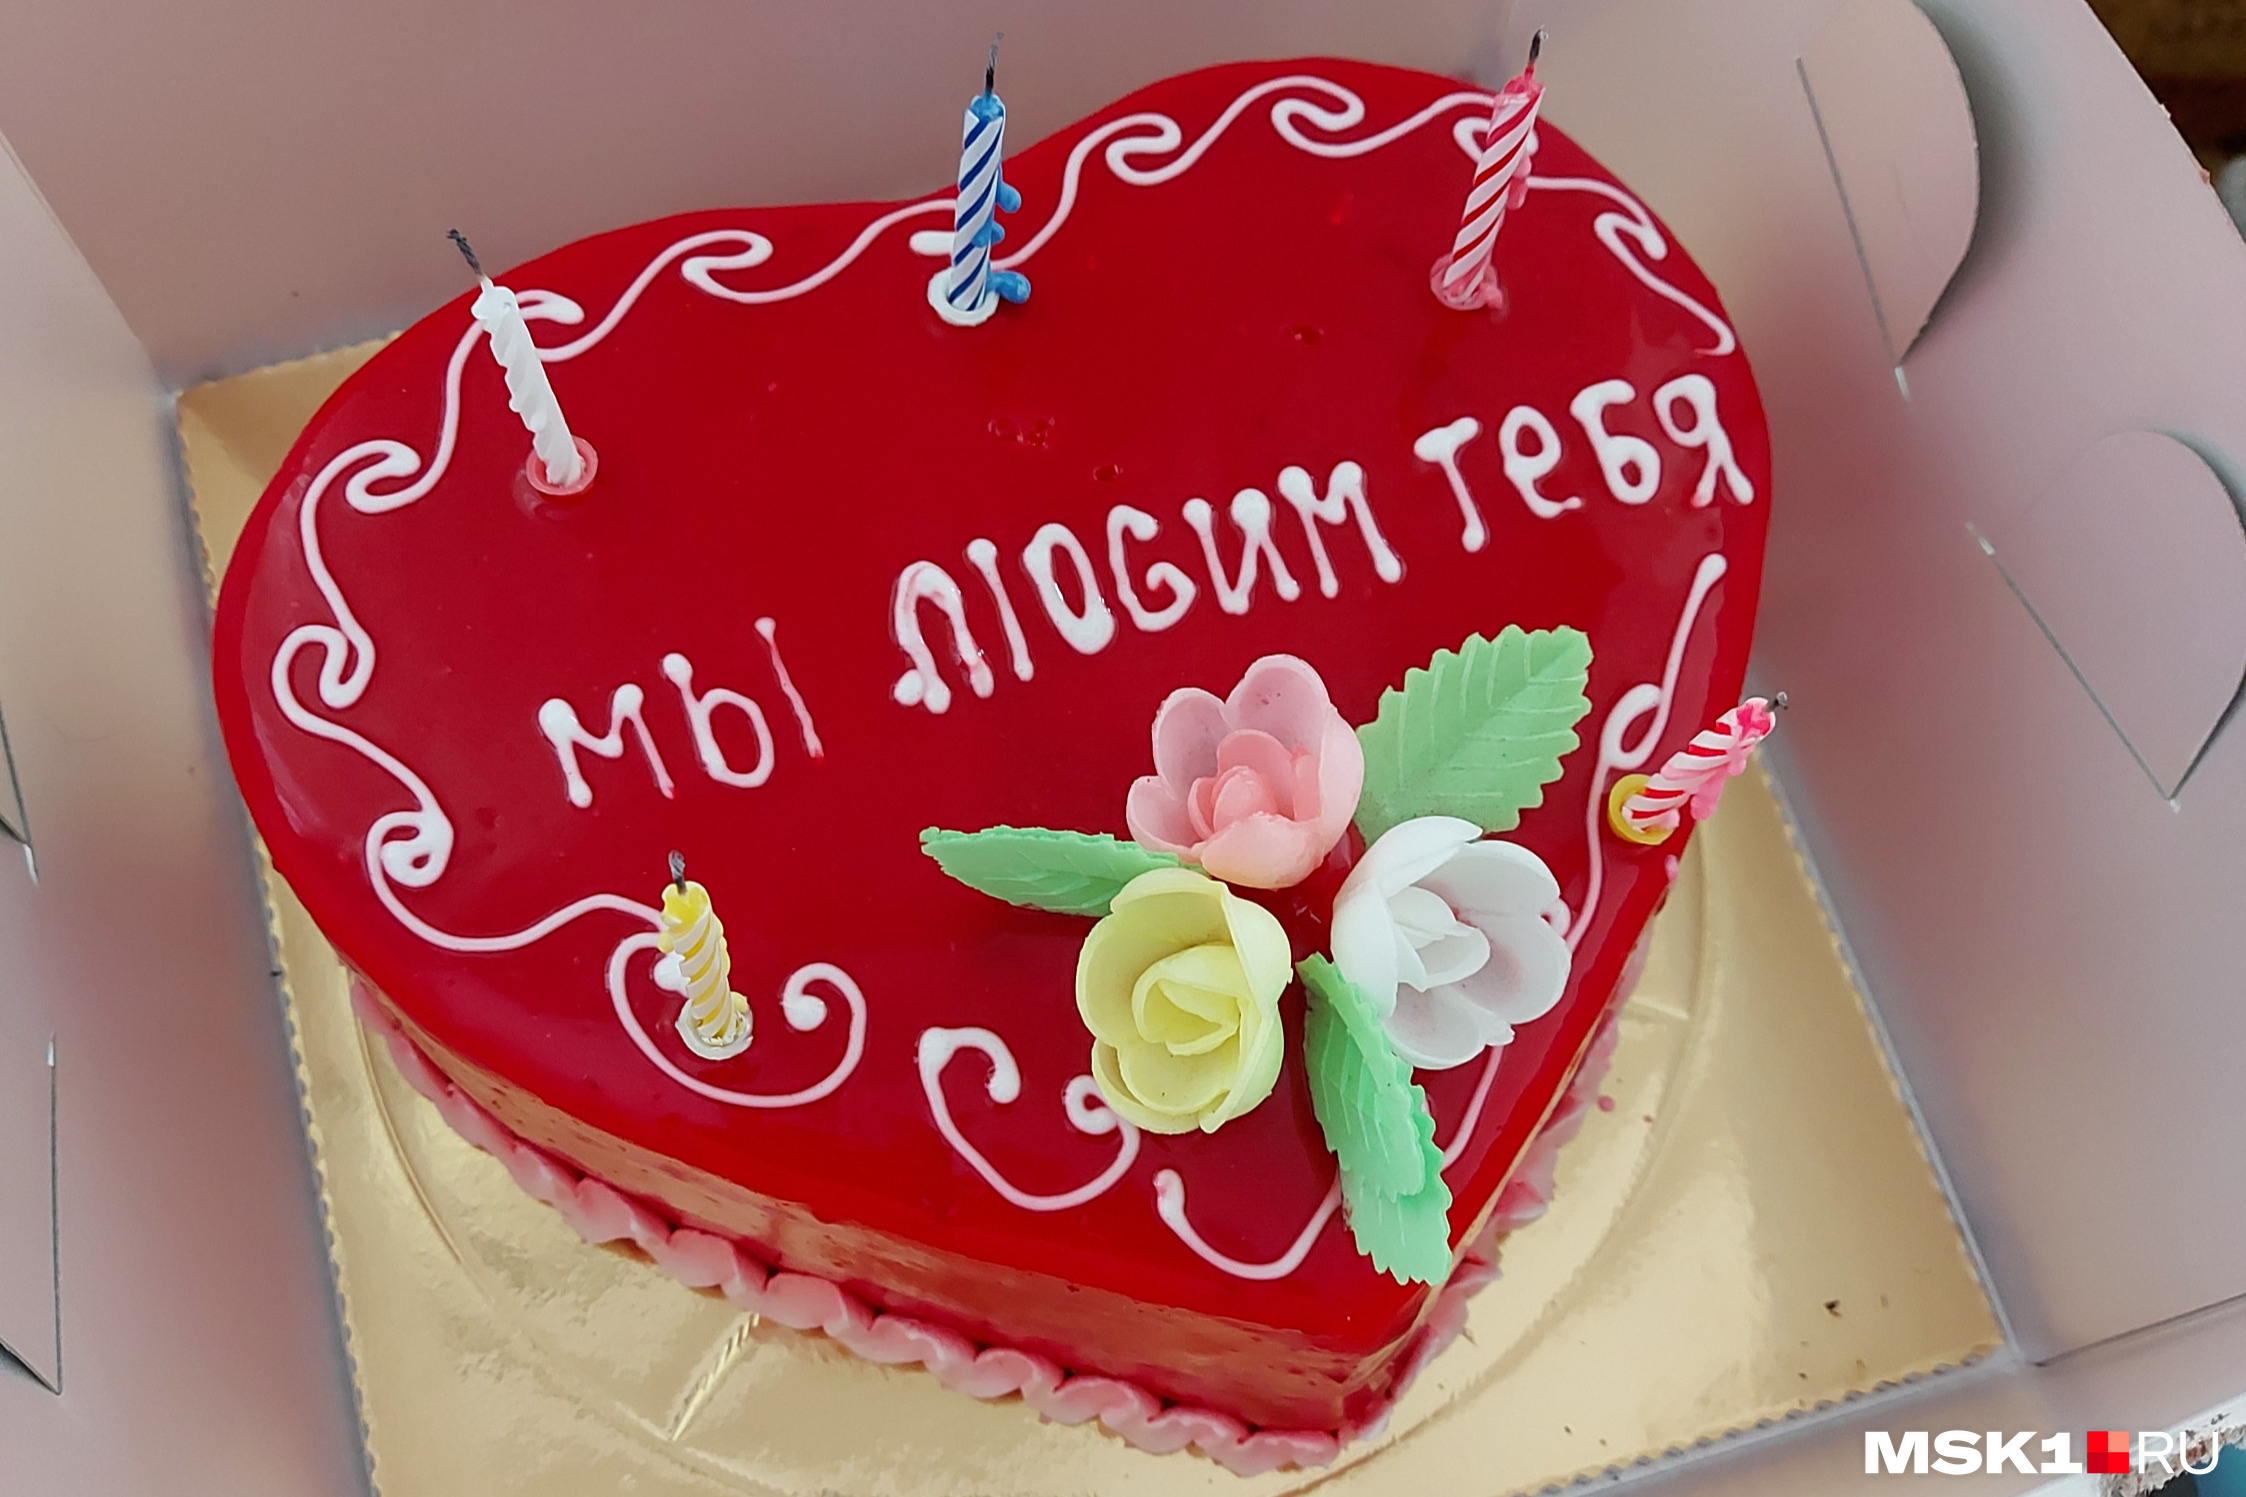 Такой торт девочки, не знающие русского языка, подарили на день рождения